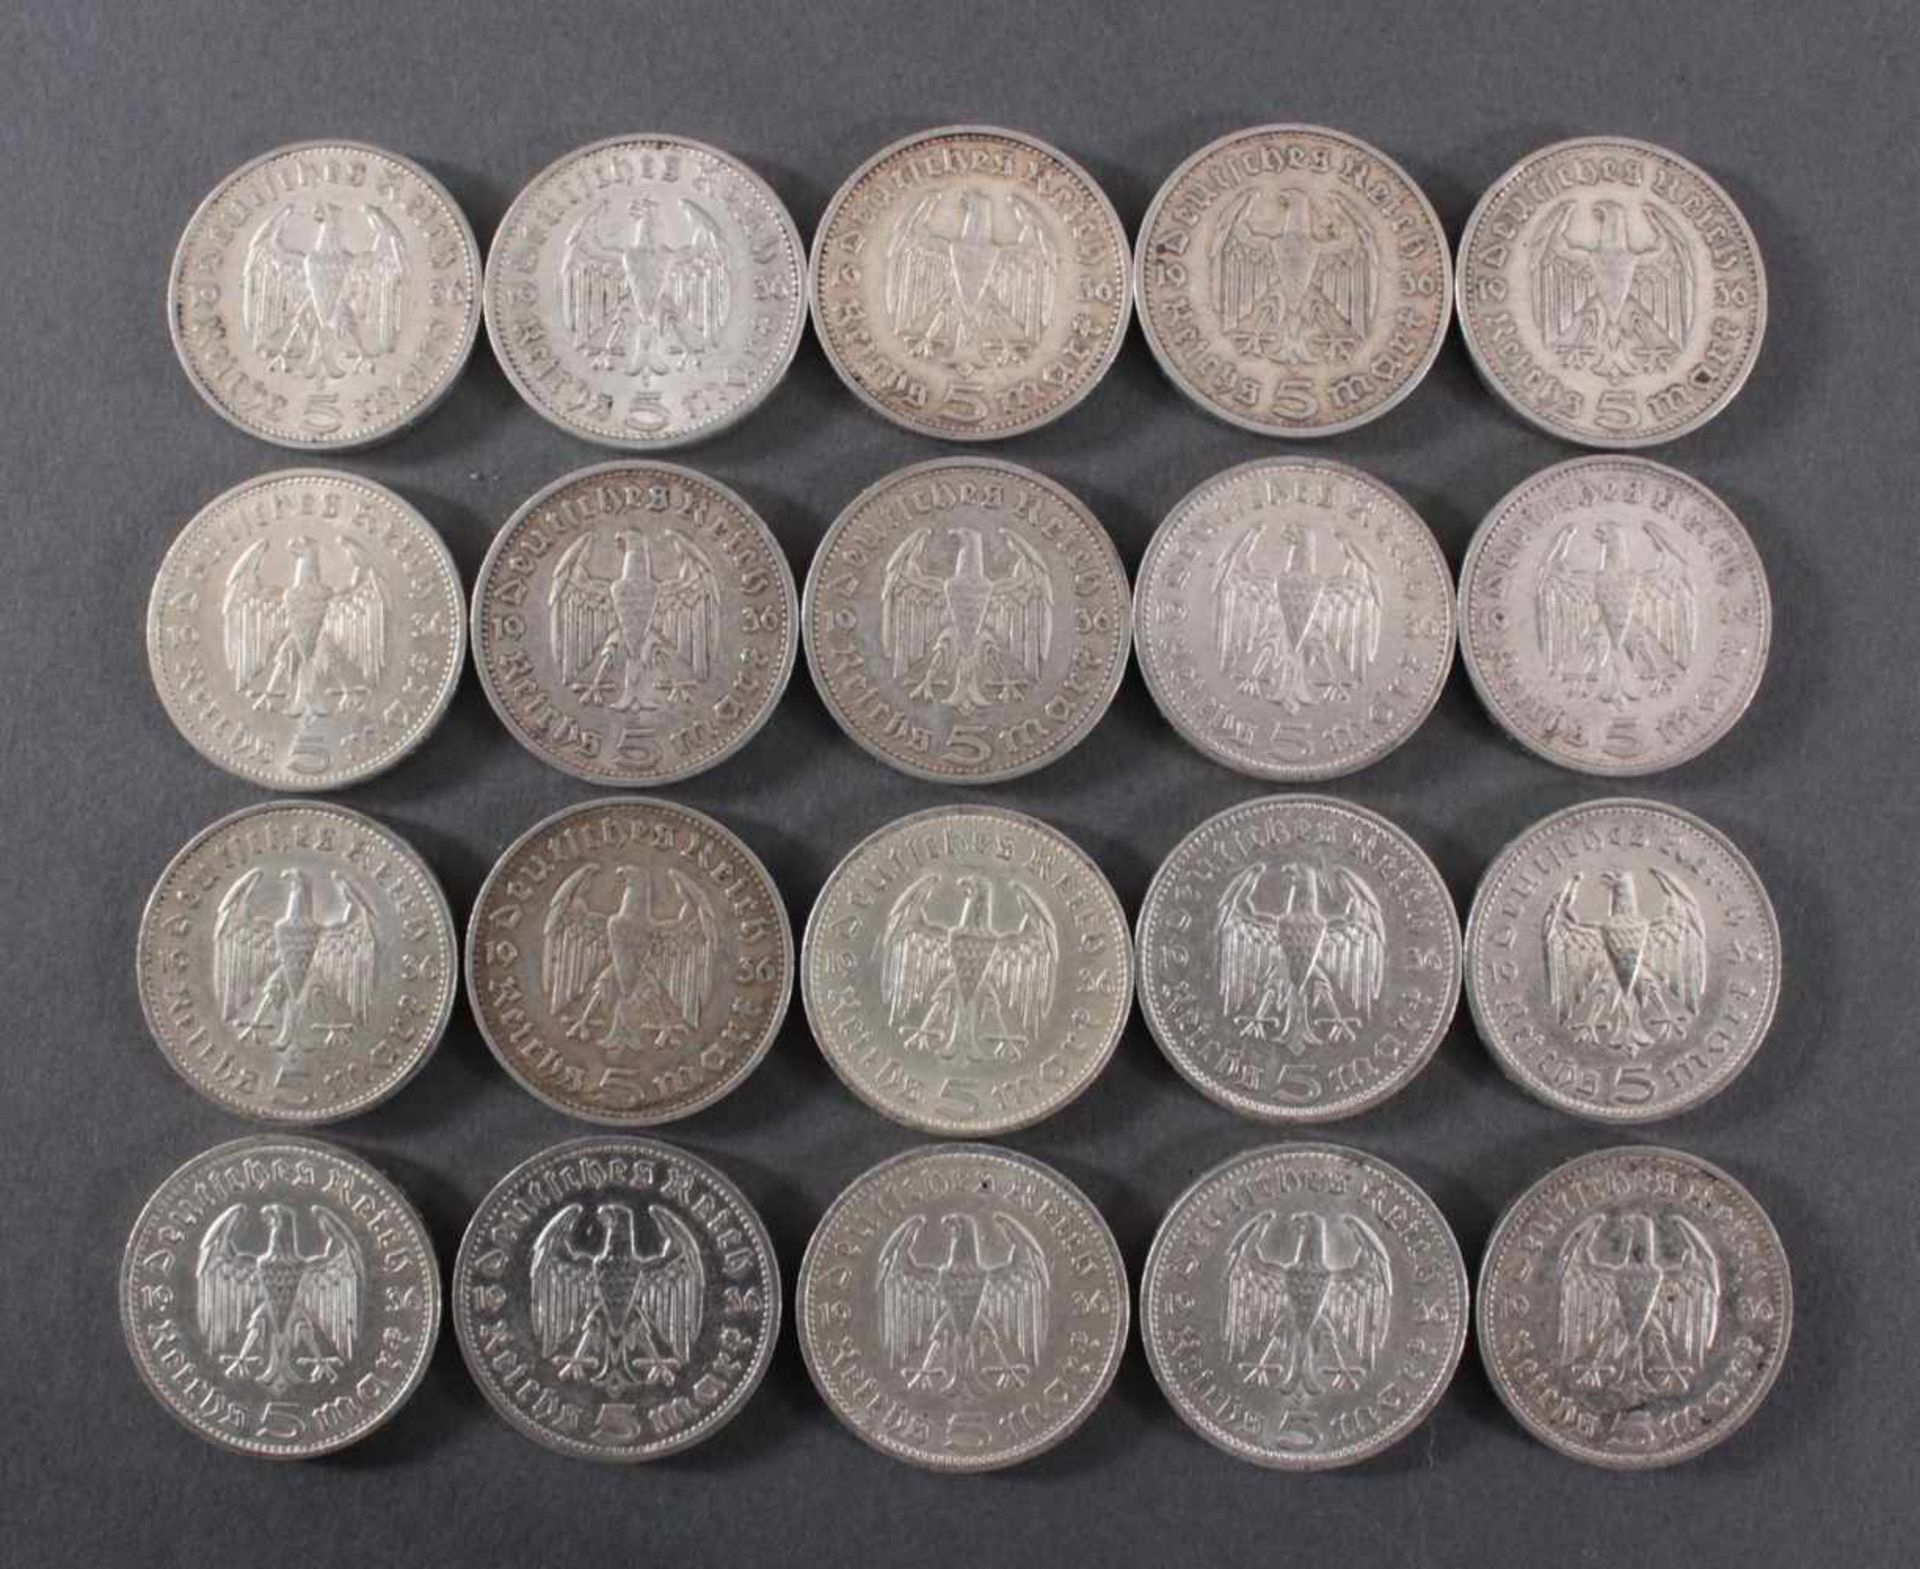 Deutsches Reich, 20x 5 ReichsmarkSilber, 10x 5 Reichsmark 1936 E und 10x 5 Reichsmark 1936 A - Bild 2 aus 2